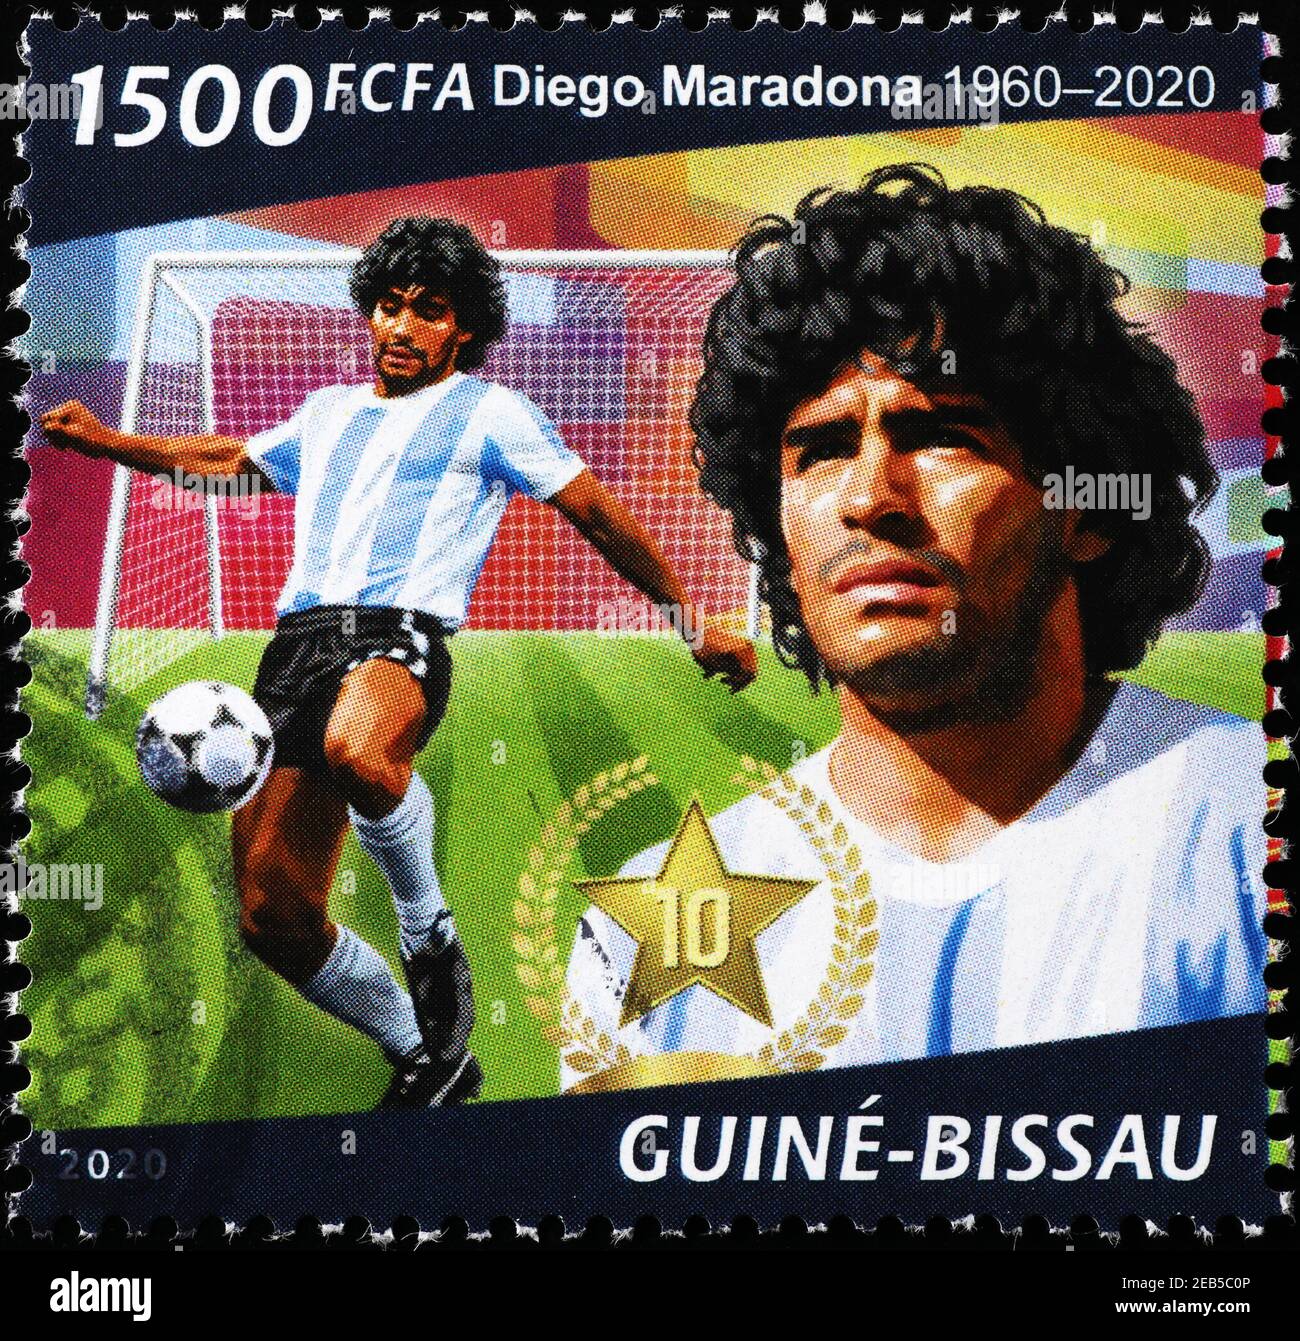 Maradona and Pele Wallpaper Discover more Diego Maradona, Football